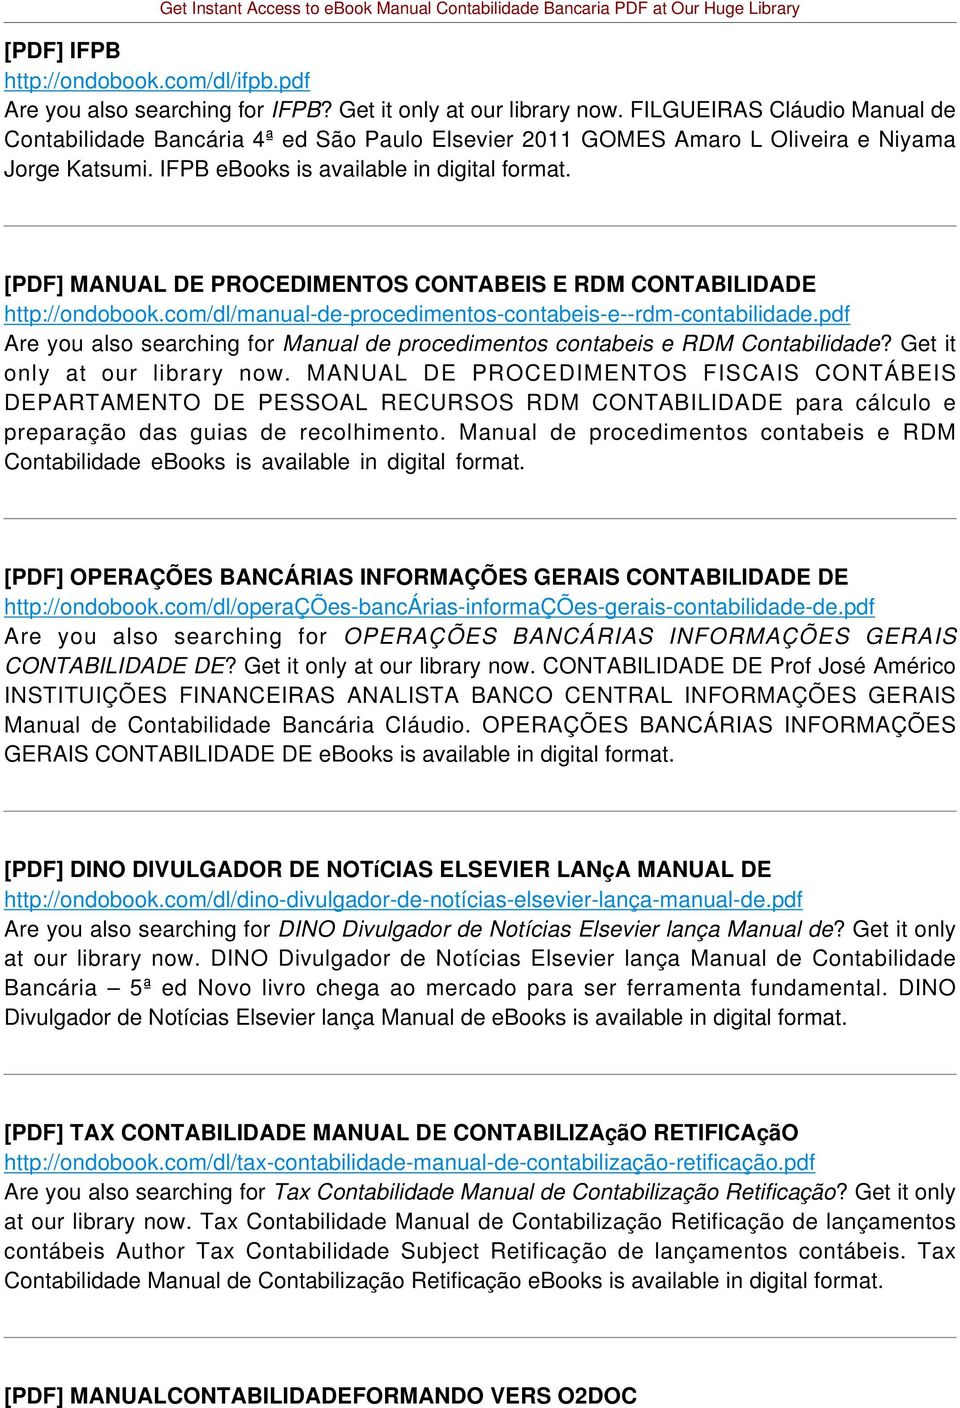 [PDF] MANUAL DE PROCEDIMENTOS CONTABEIS E RDM CONTABILIDADE http://ondobook.com/dl/manual-de-procedimentos-contabeis-e--rdm-contabilidade.